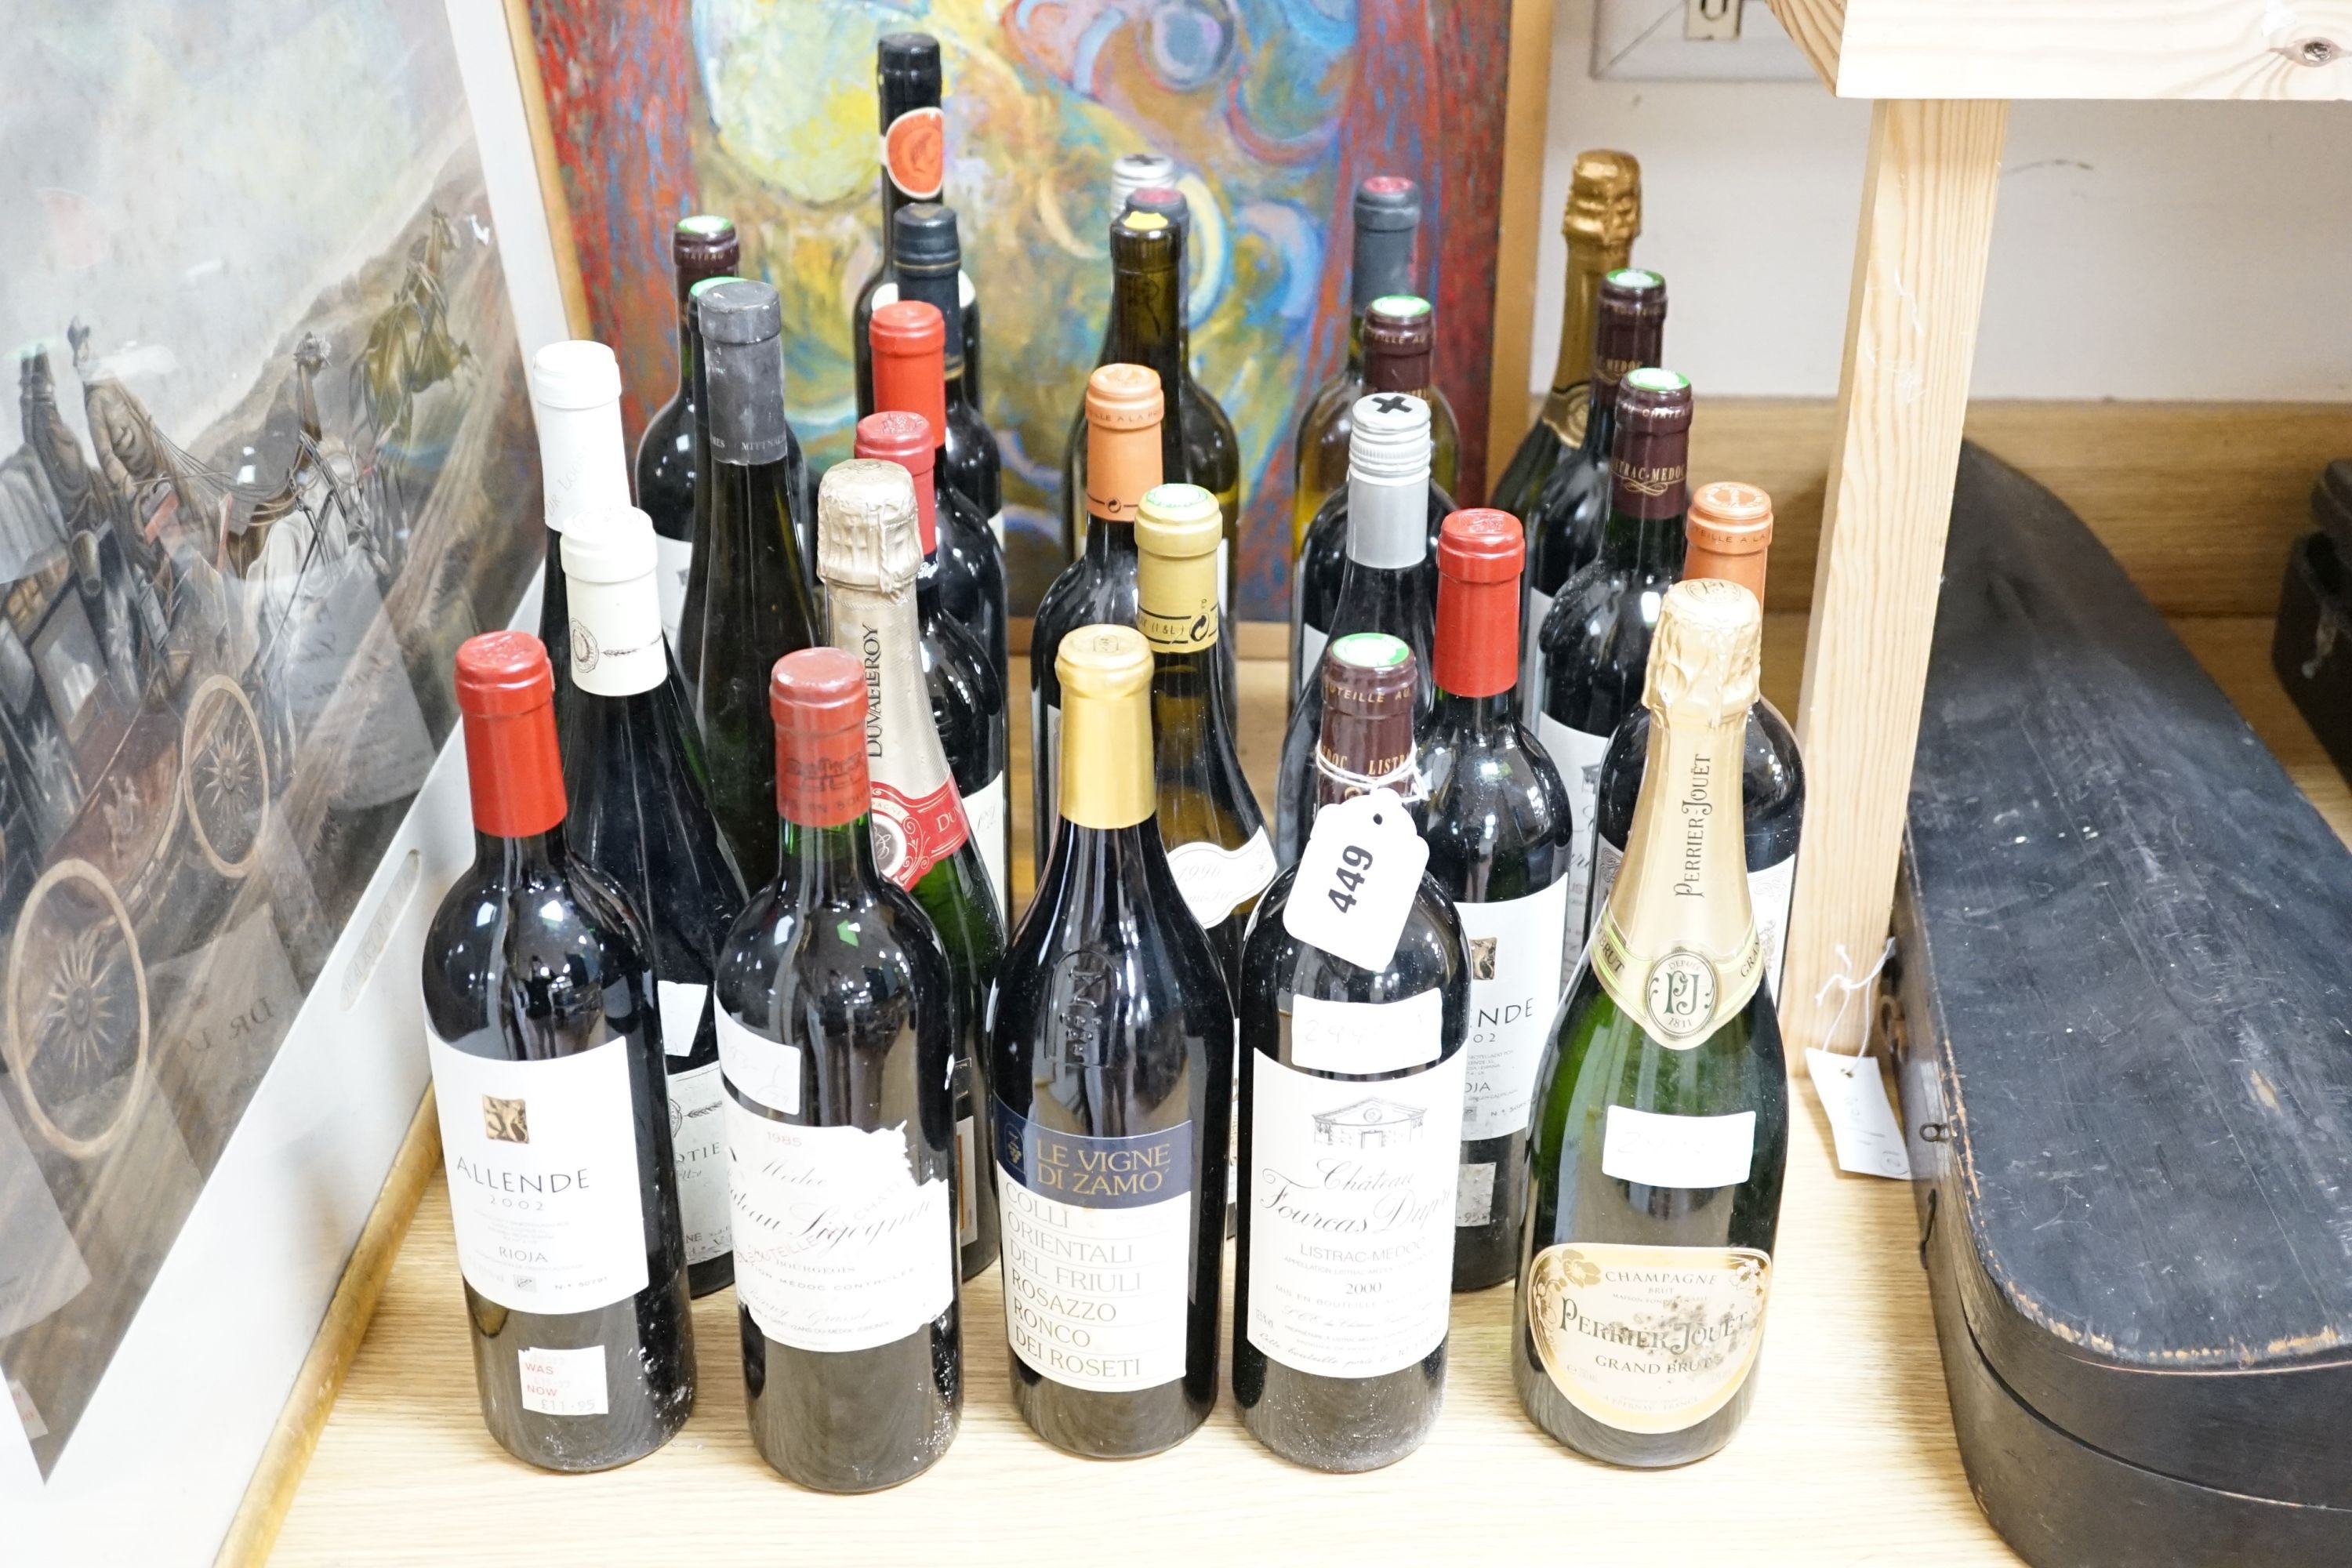 Twenty nine assorted bottles of wine is etc. including Les Tourelles de Longueville, 2003, Chateau Fourcas Dupre, 2000, Perrier Jouet Grand Brut Champagne, Chateau Sigognac, 1985 and Cote Rotie, 2001.